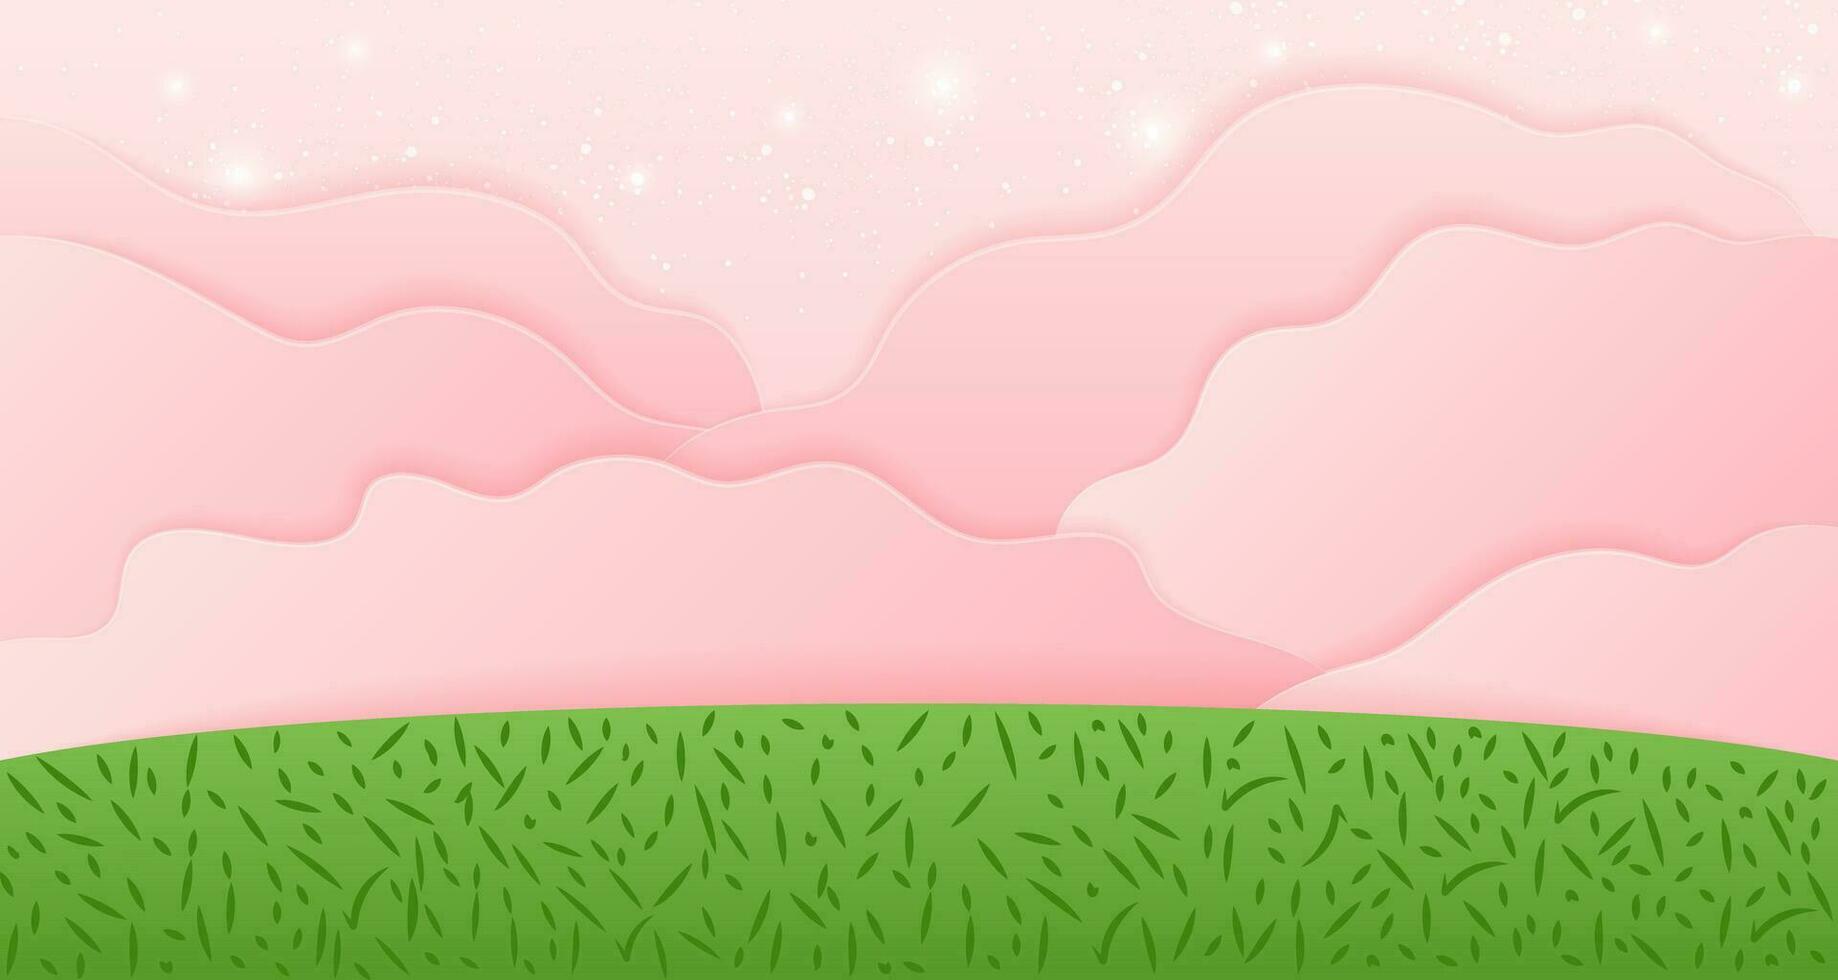 dibujos animados naturaleza antecedentes con verde campo y rosado nubes linda vector ilustración de paisaje. fondos de pantalla en papel cortar estilo.